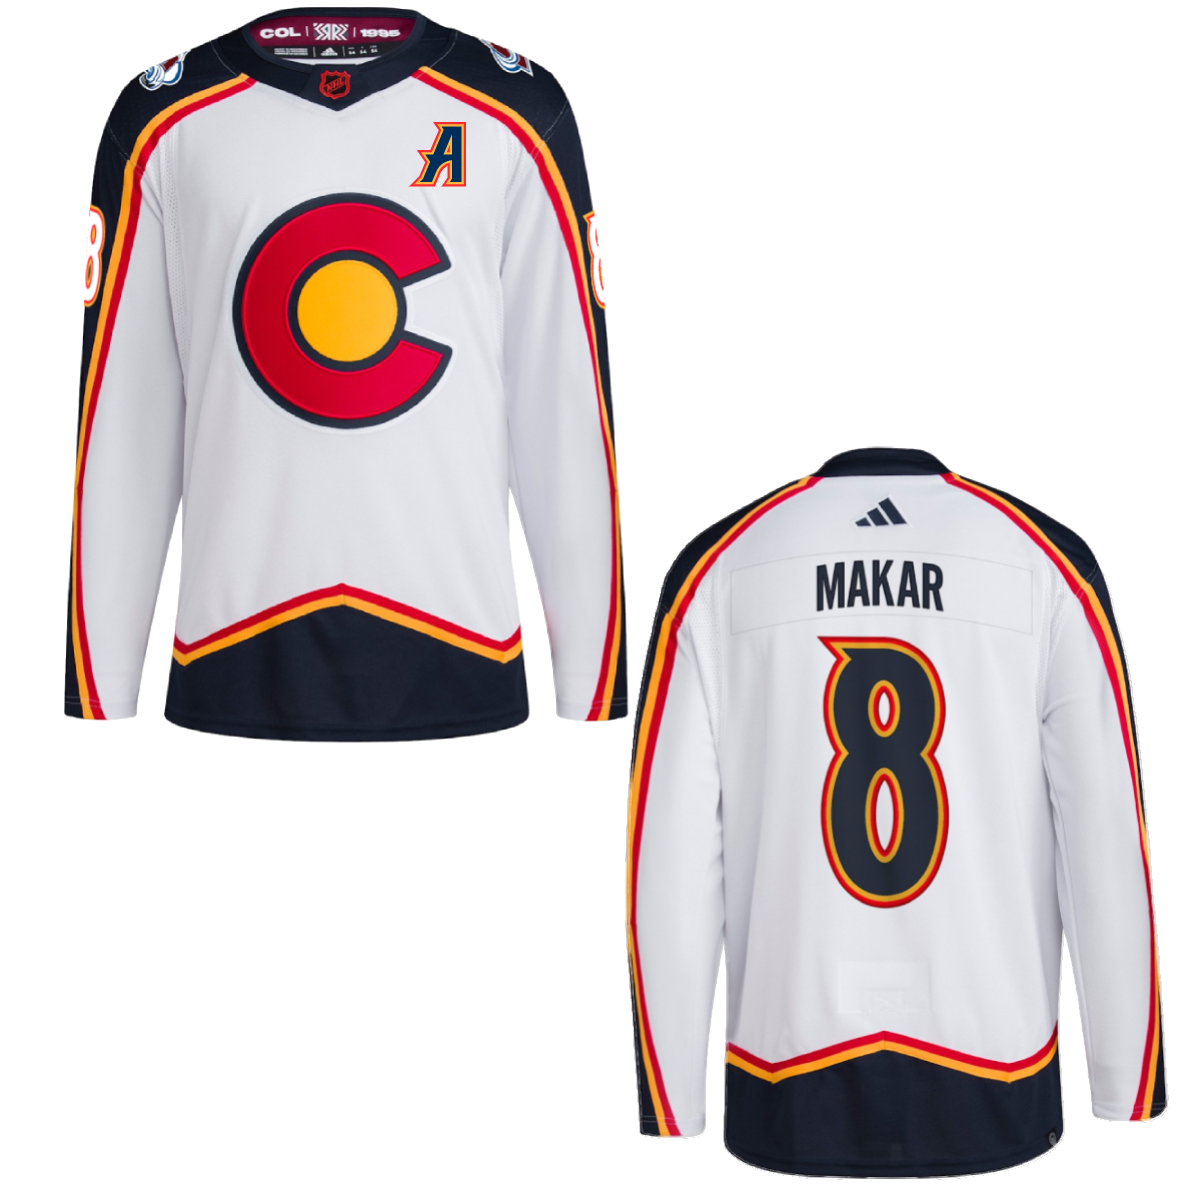 Cale Makar Colorado Avalanche 2022 Reverse Retro Alternate NHL